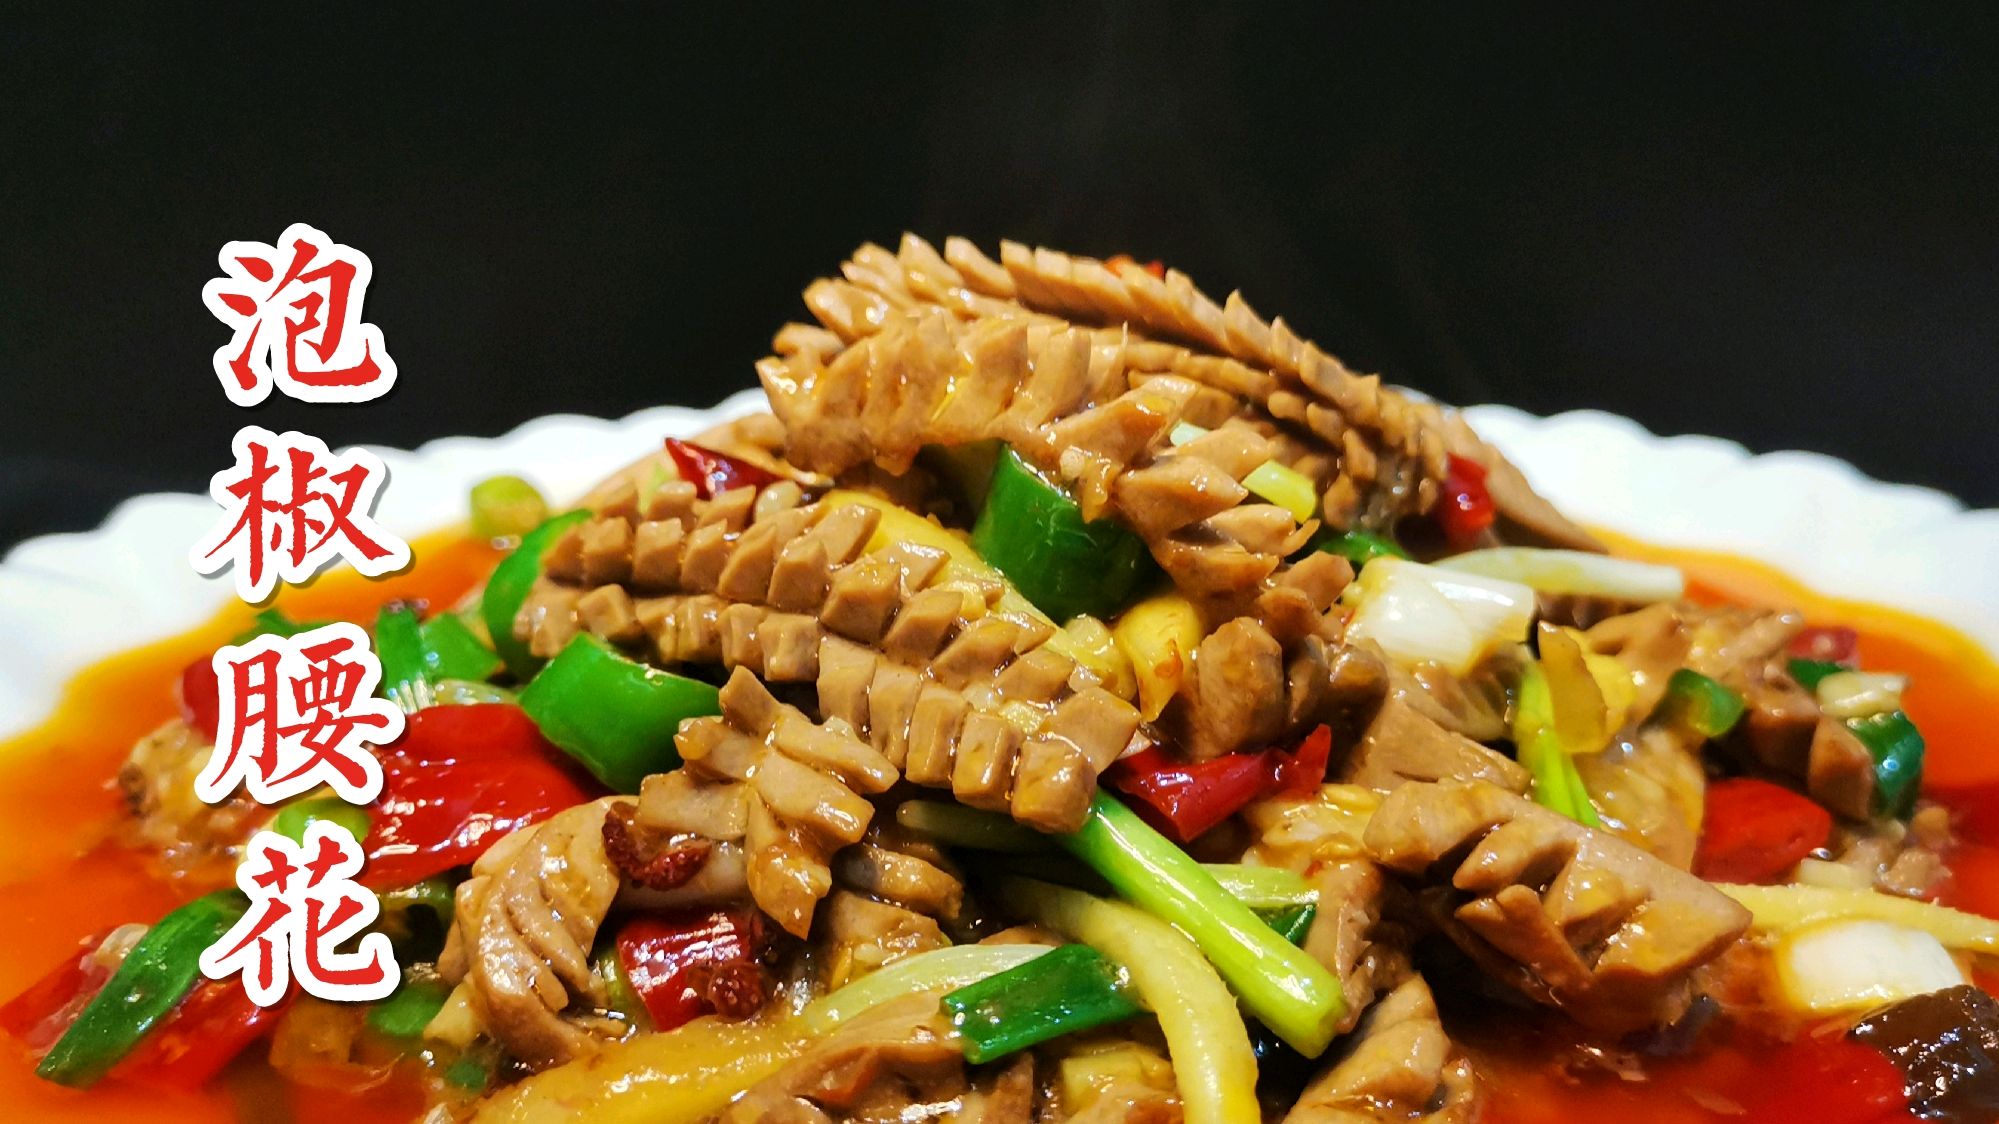 川菜厨师教你:泡椒腰花的家常做法,脆嫩爽口无异味超级下饭